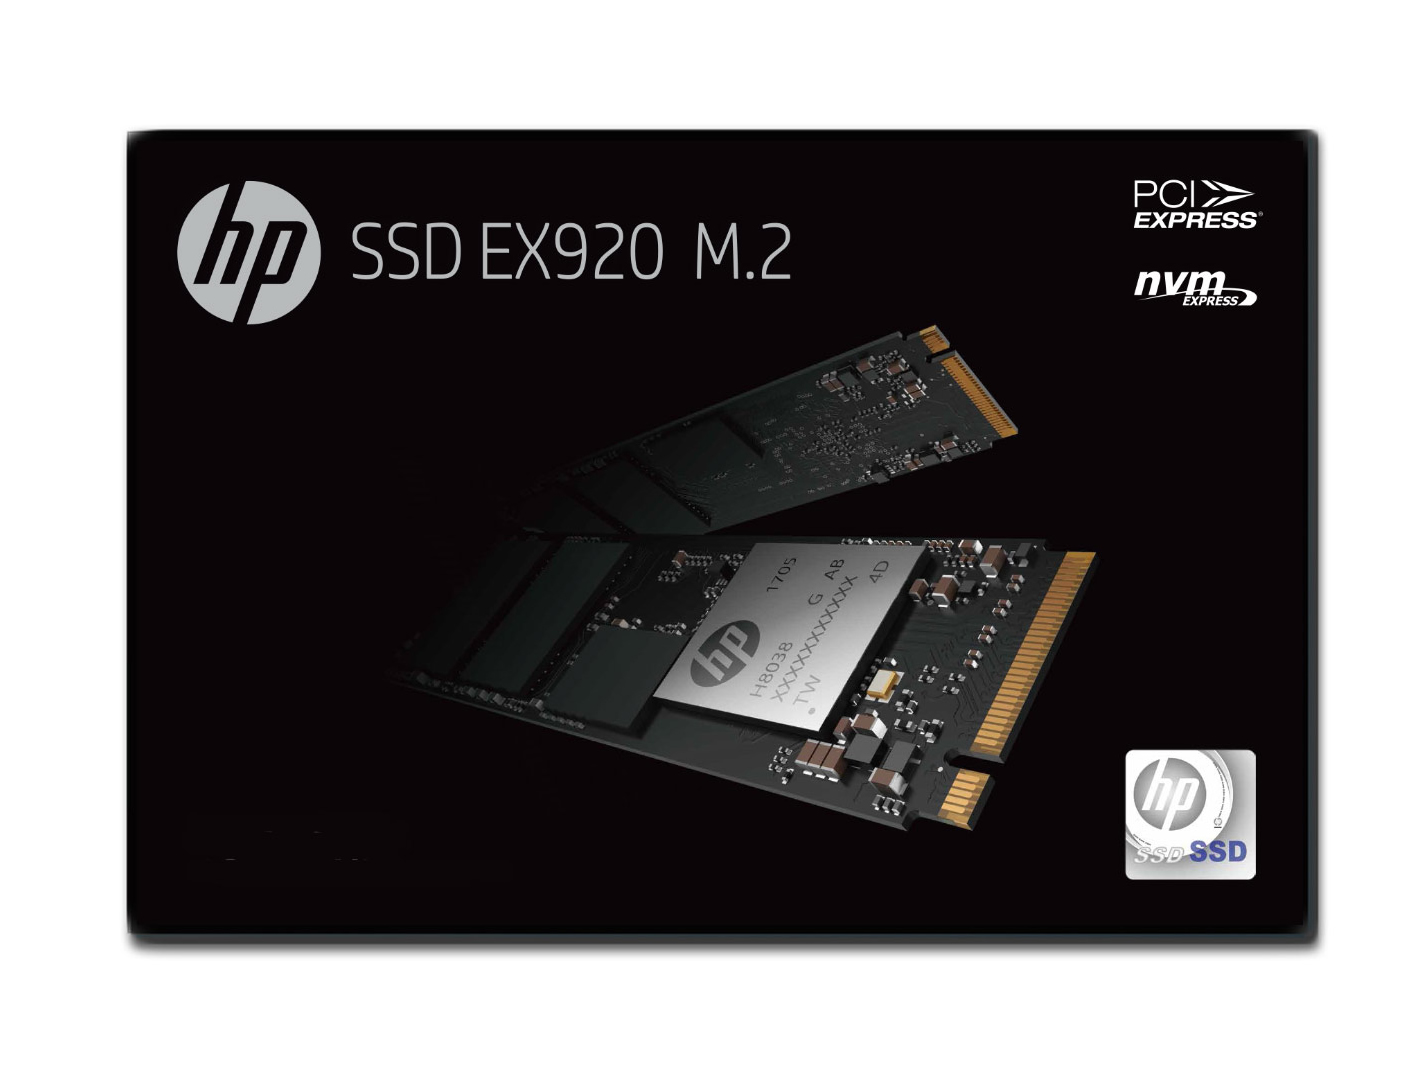 Biwin anunció el lanzamiento y la disponibilidad del SSD EX920 M.2 PCIe de HP en Colombia.